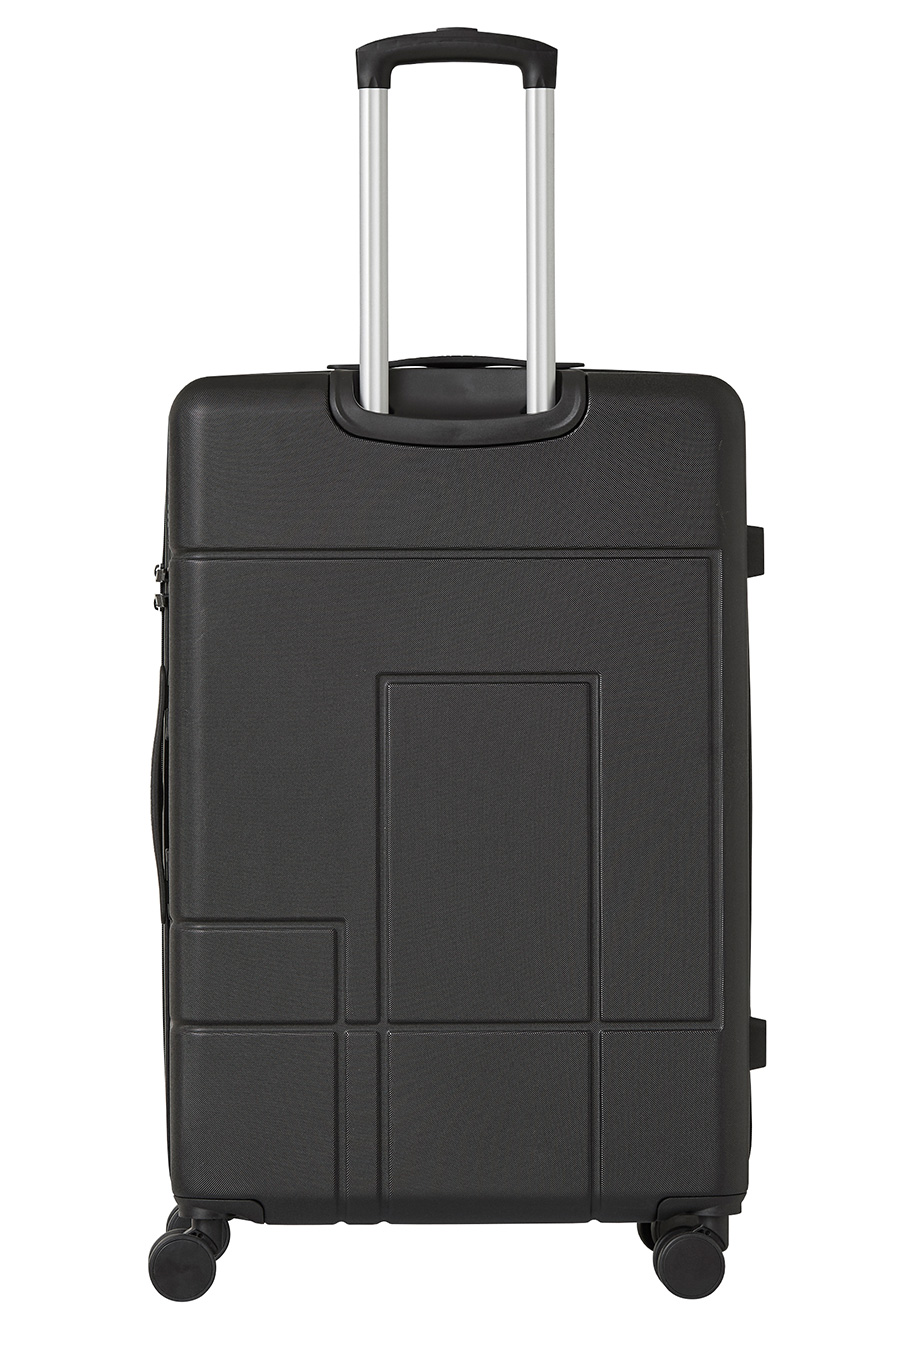 Travel suitcase CAT 84480-01